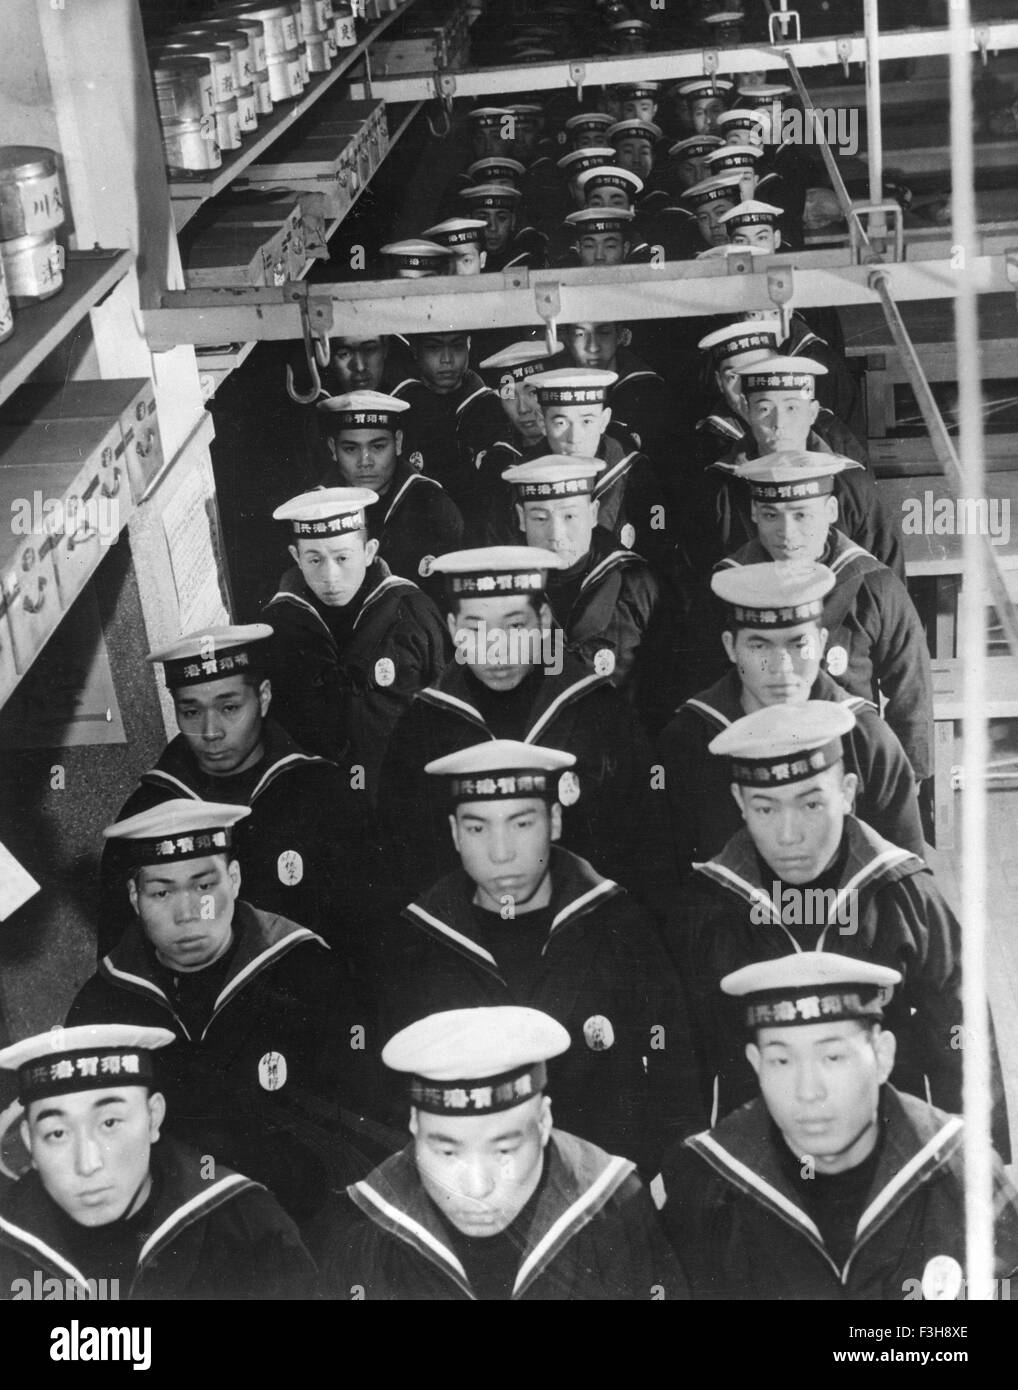 Les marins de la marine japonaise à propos de 1943 Banque D'Images